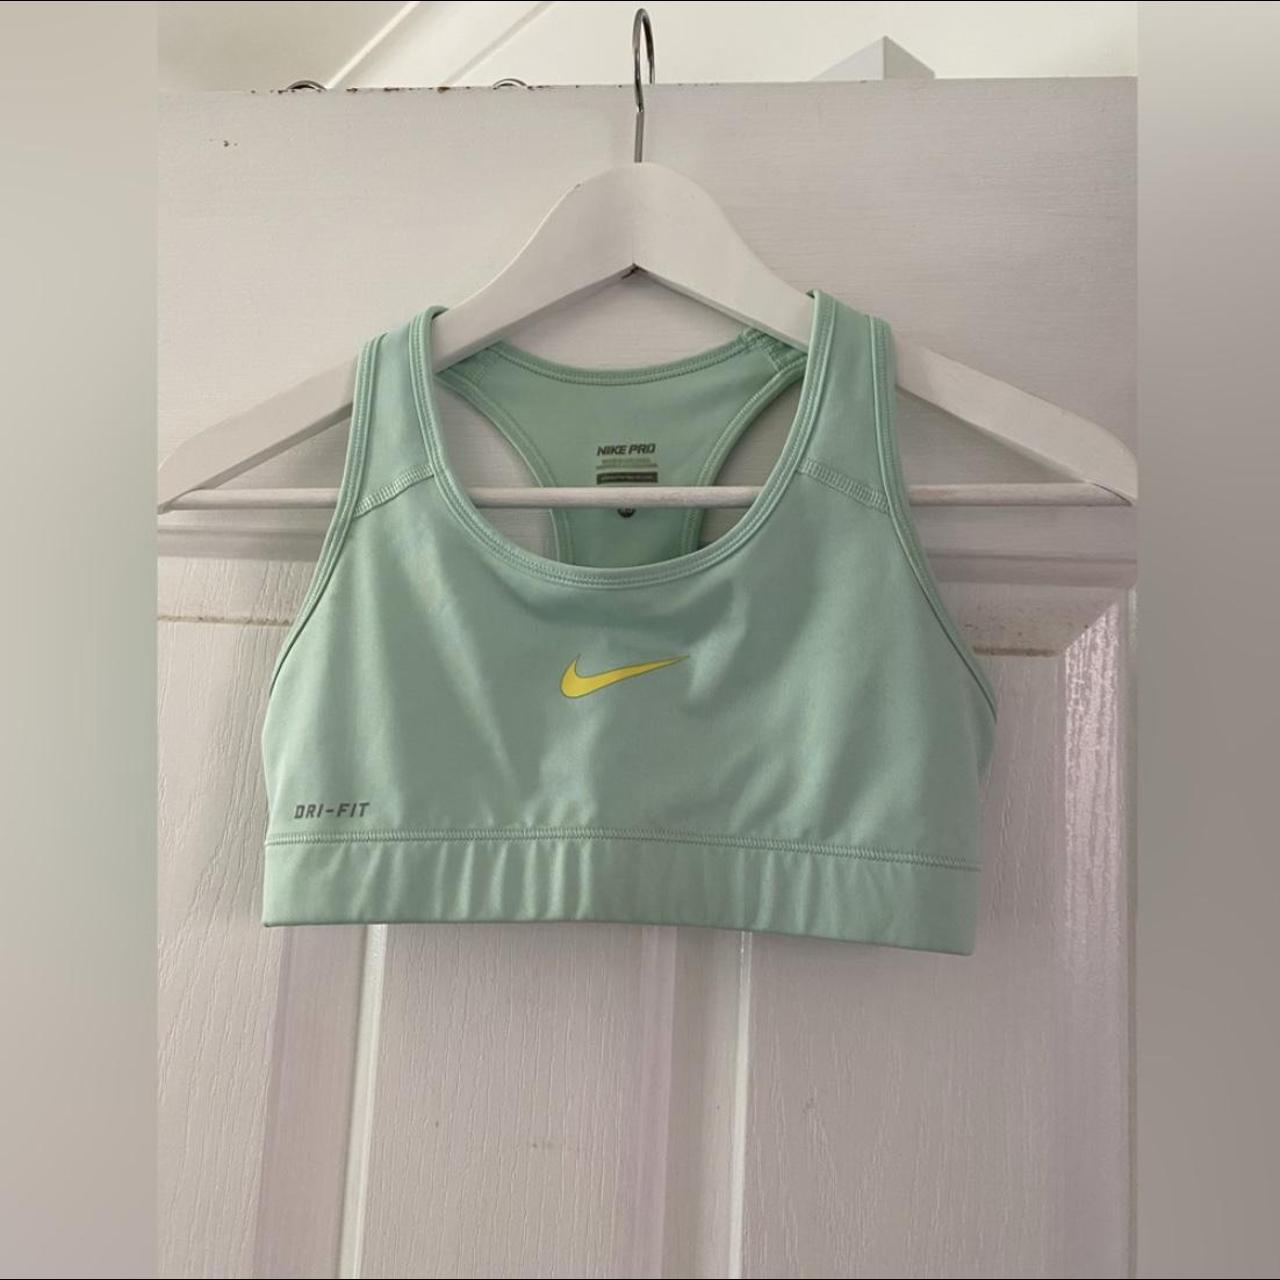 Green Sports bra from dunnes, worn a few times, - Depop